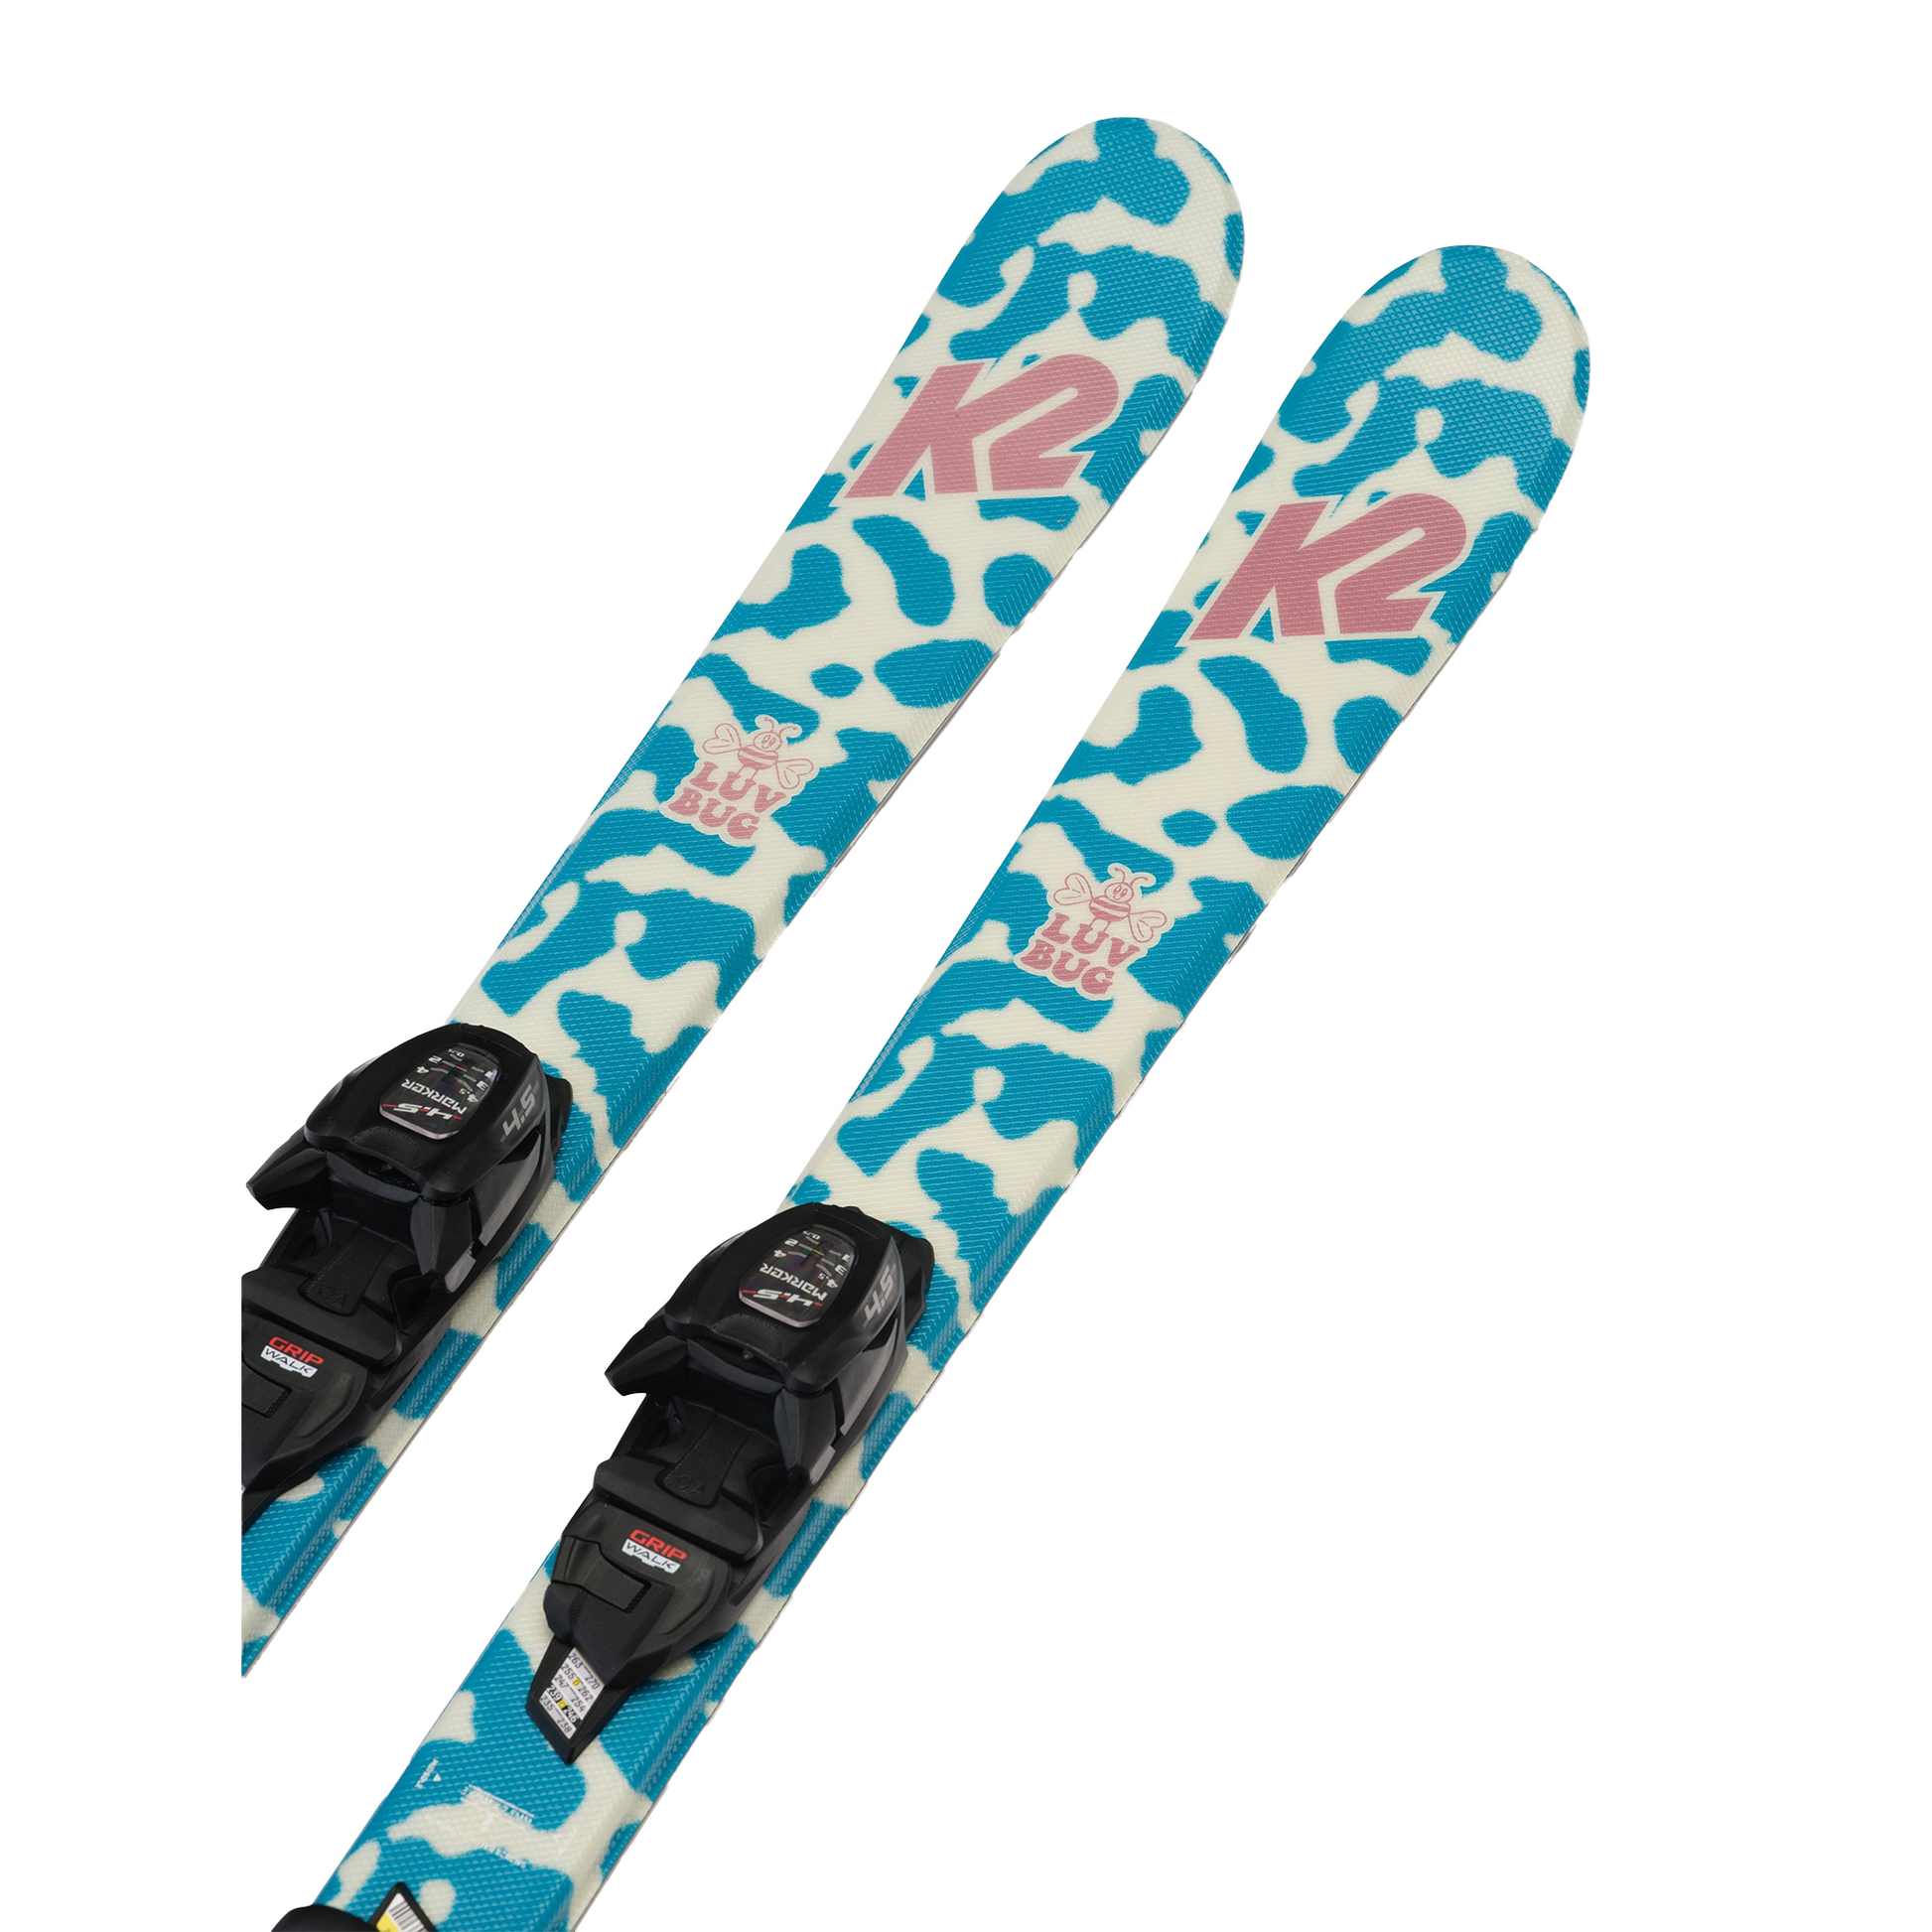 K2 Youth Luv Bug Skis w/ FDT 4.5 Bindings Skis